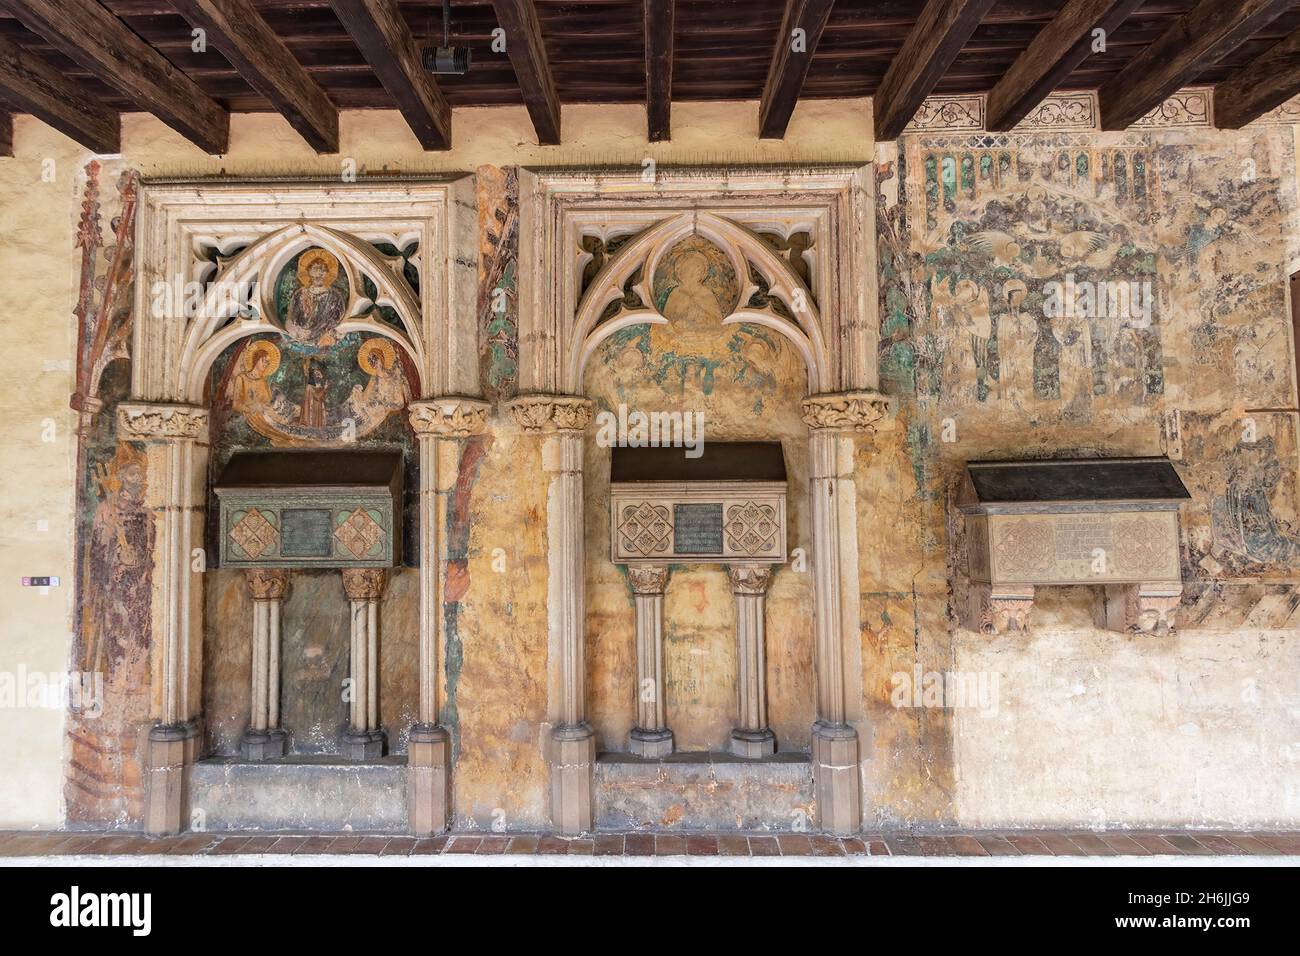 Barcelona, España - 24 de septiembre de 2021: Tumbas en el claustro del Monasterio de Pedralbes. Es un monasterio gótico en Barcelona, Cataluña, España Foto de stock